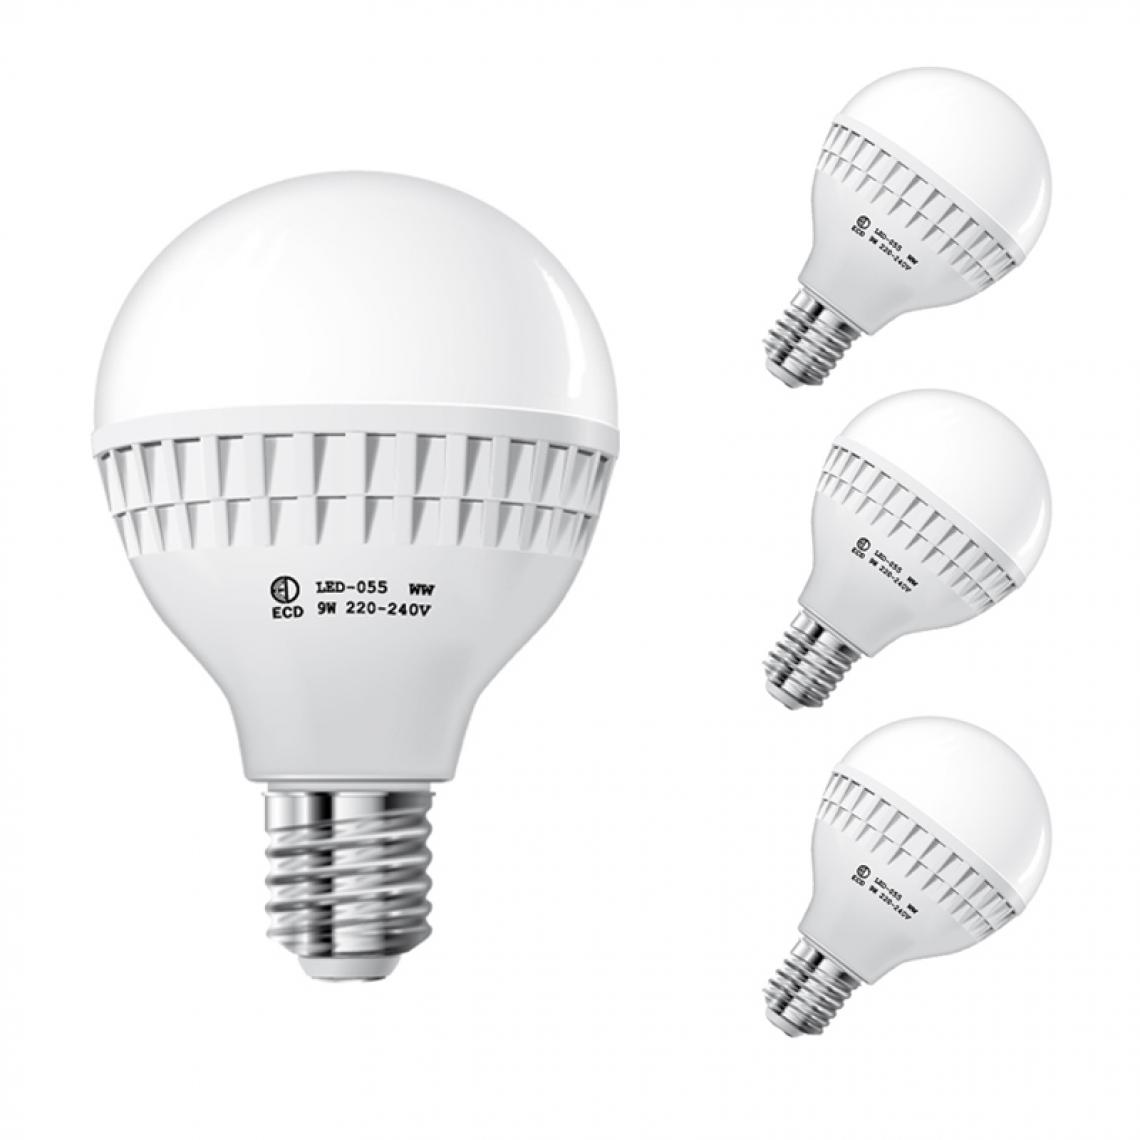 Ecd Germany - ECD Germany 3 x 9W E27 LED Lampe | 6000 Kelvin blanc froid | 584 lumens | 220-240 V | remplace une ampoule halogène de 60 W | Ampoules à économie d'énergie - Ampoules LED